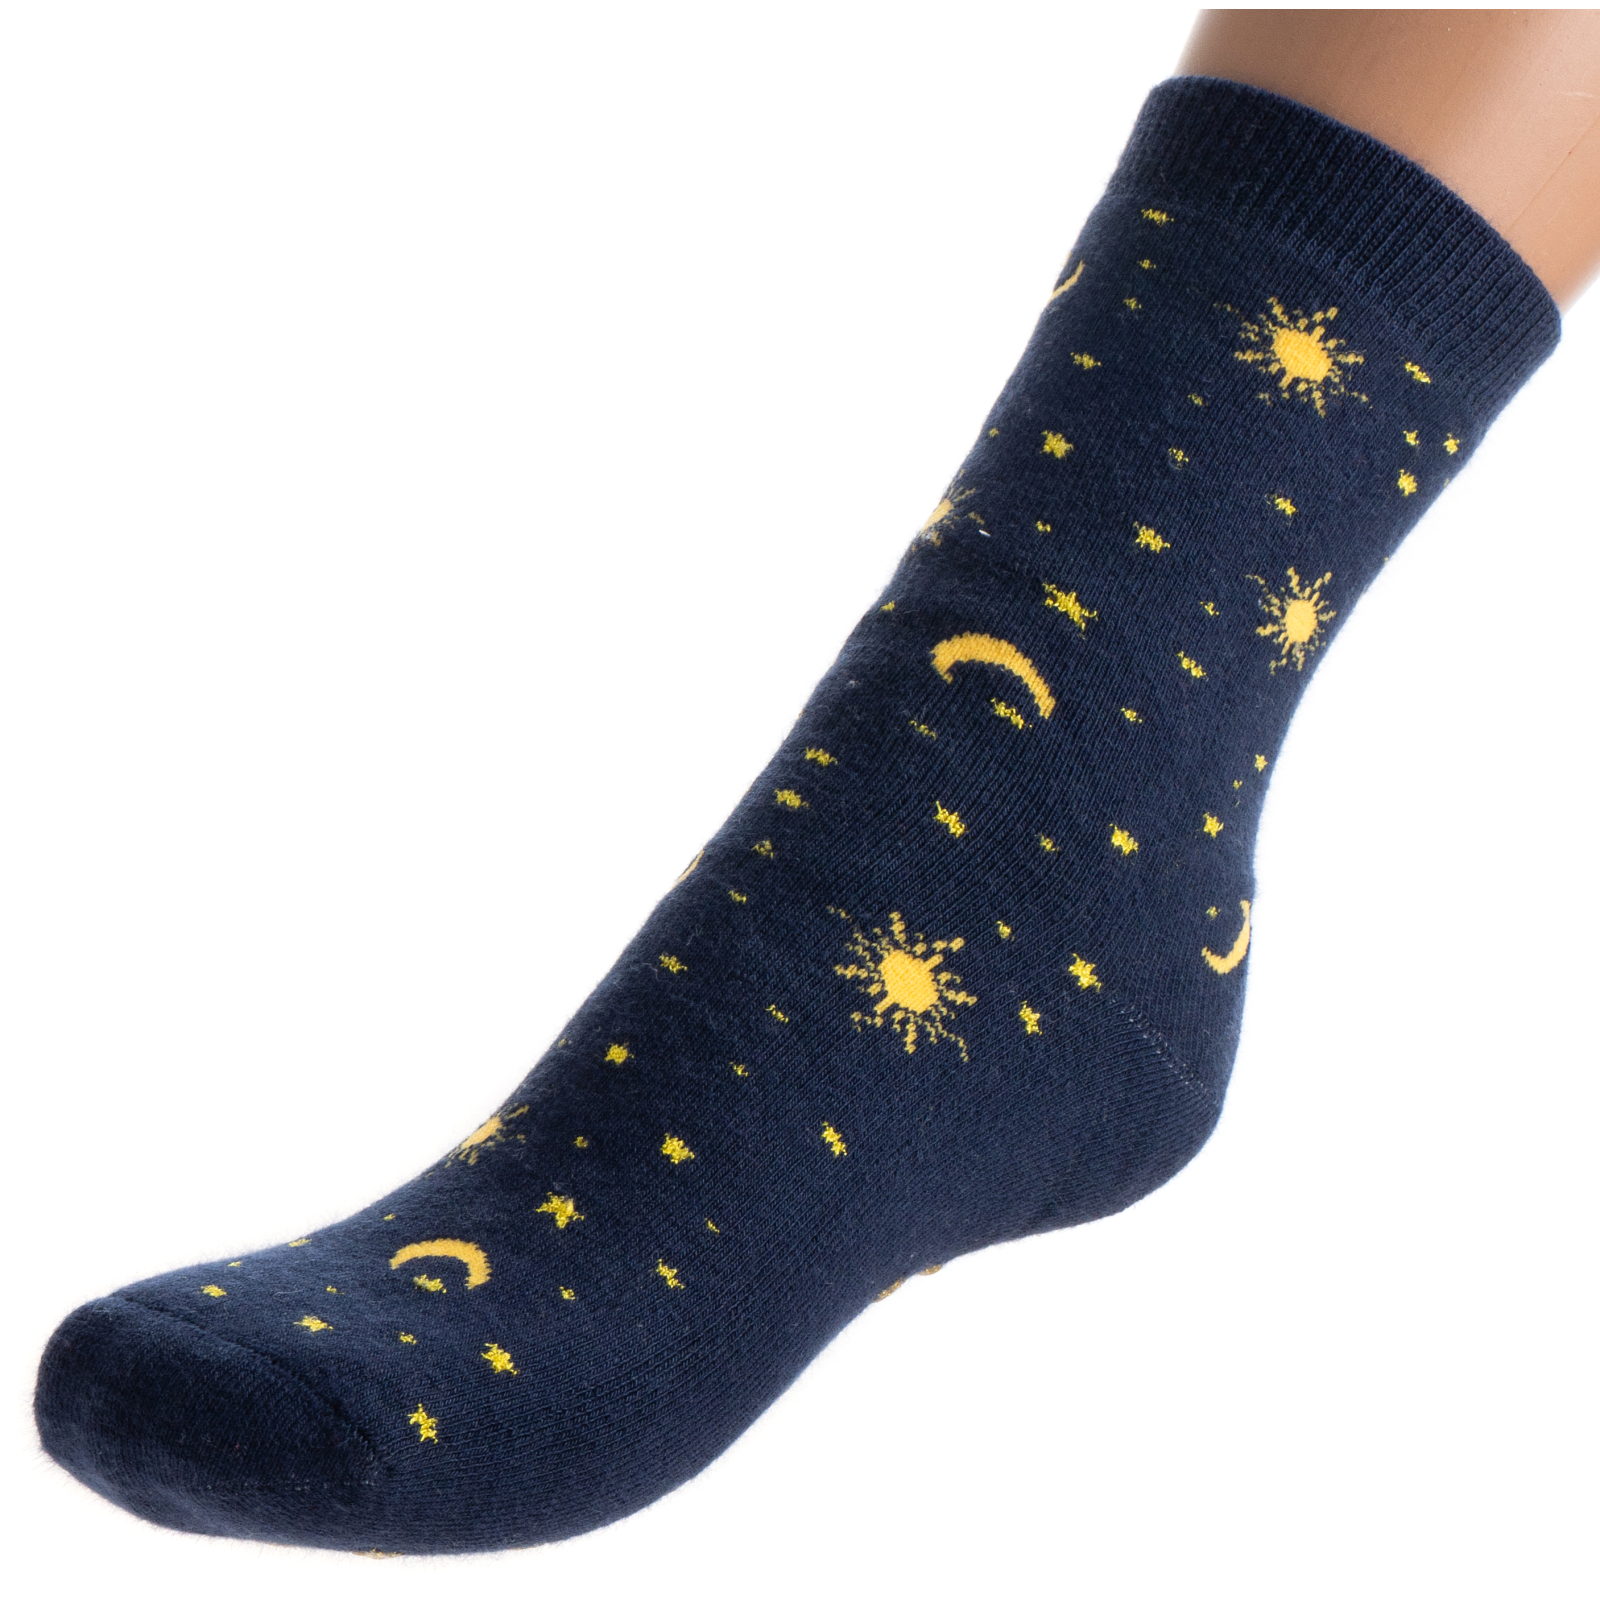 Носки детские Bross махровые со звездочками (10196-8-blue)